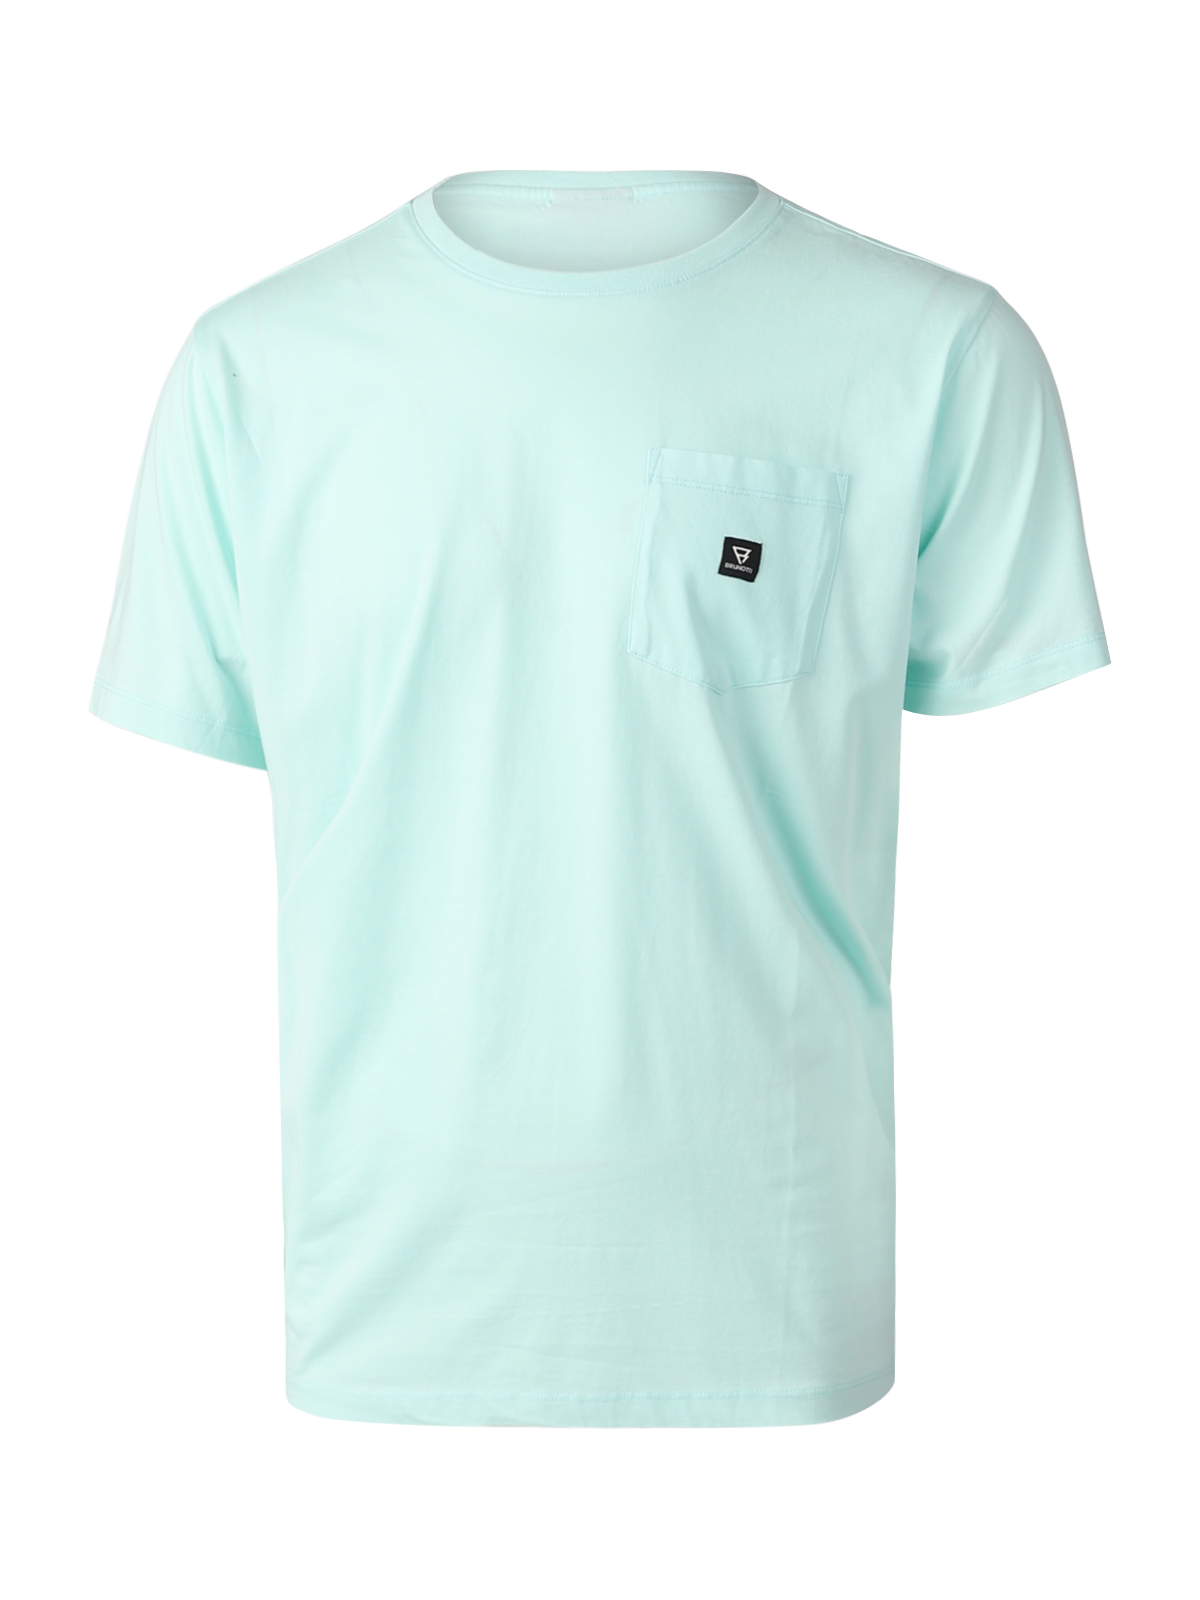 Axle Herren T-shirt | Mint